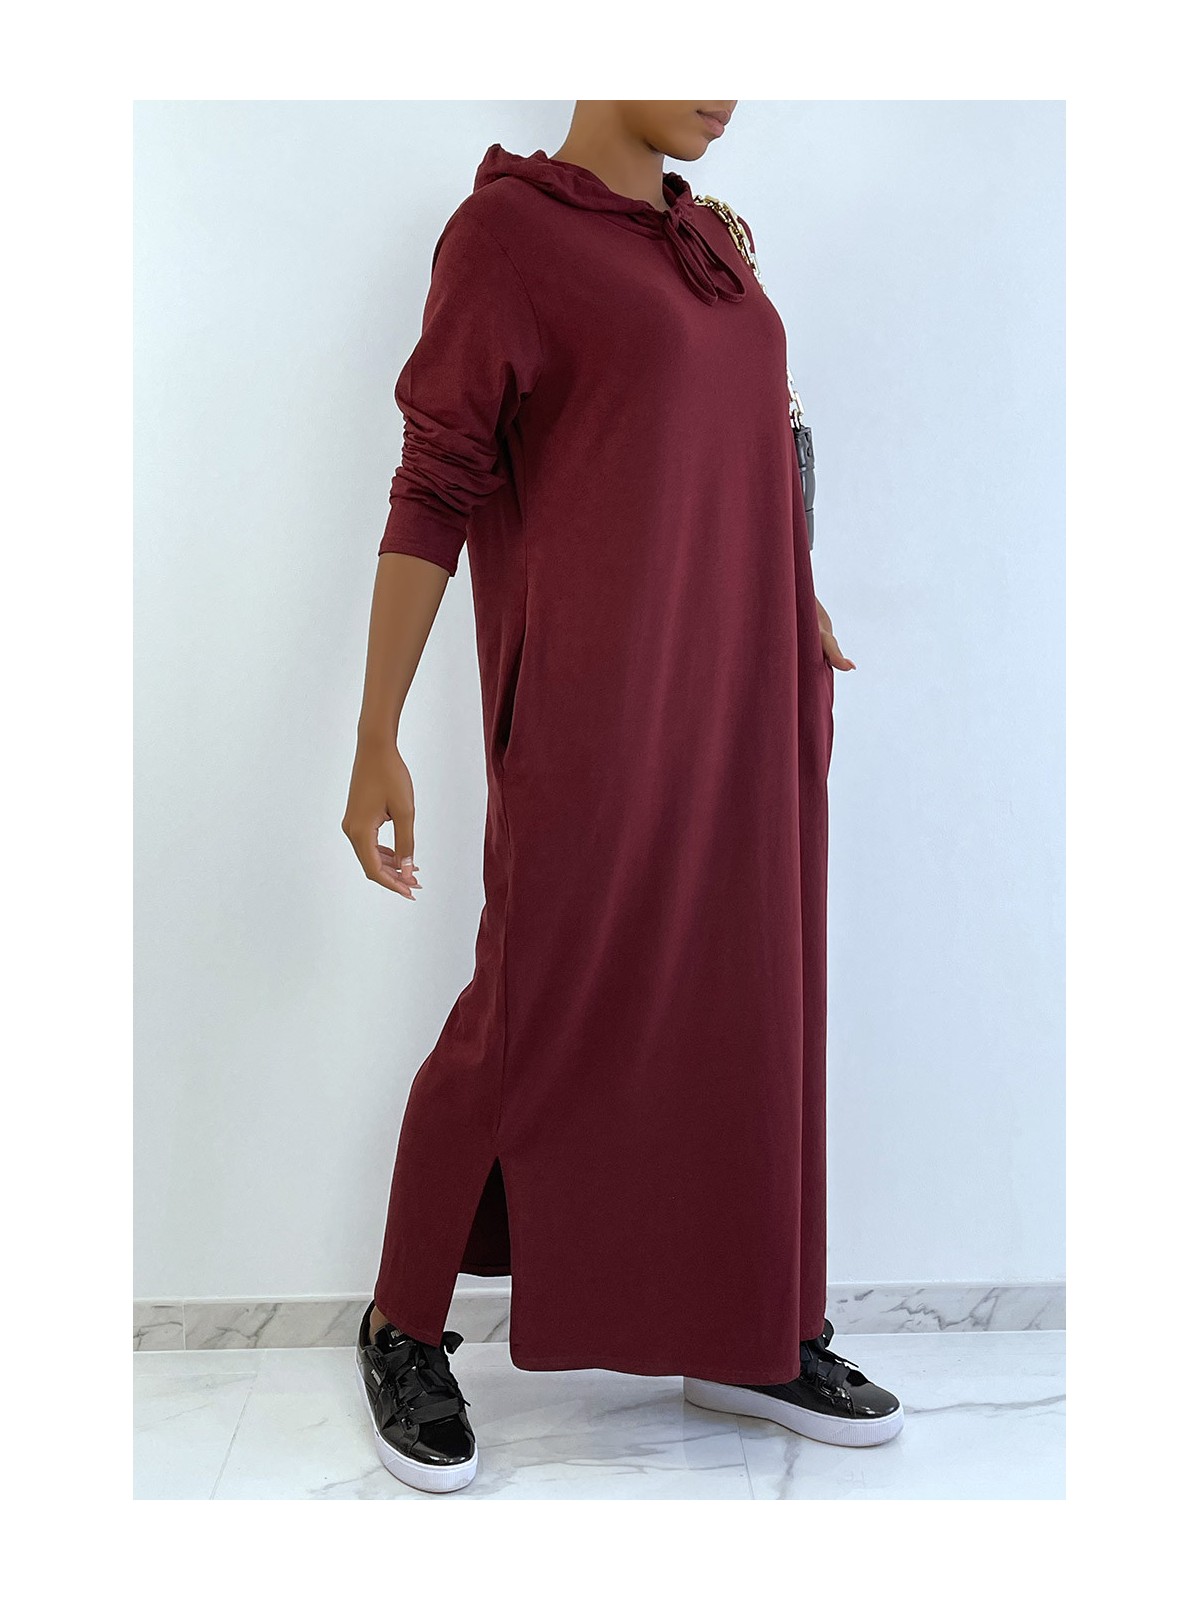 Longue robe sweat abaya bordeaux à capuche - 3